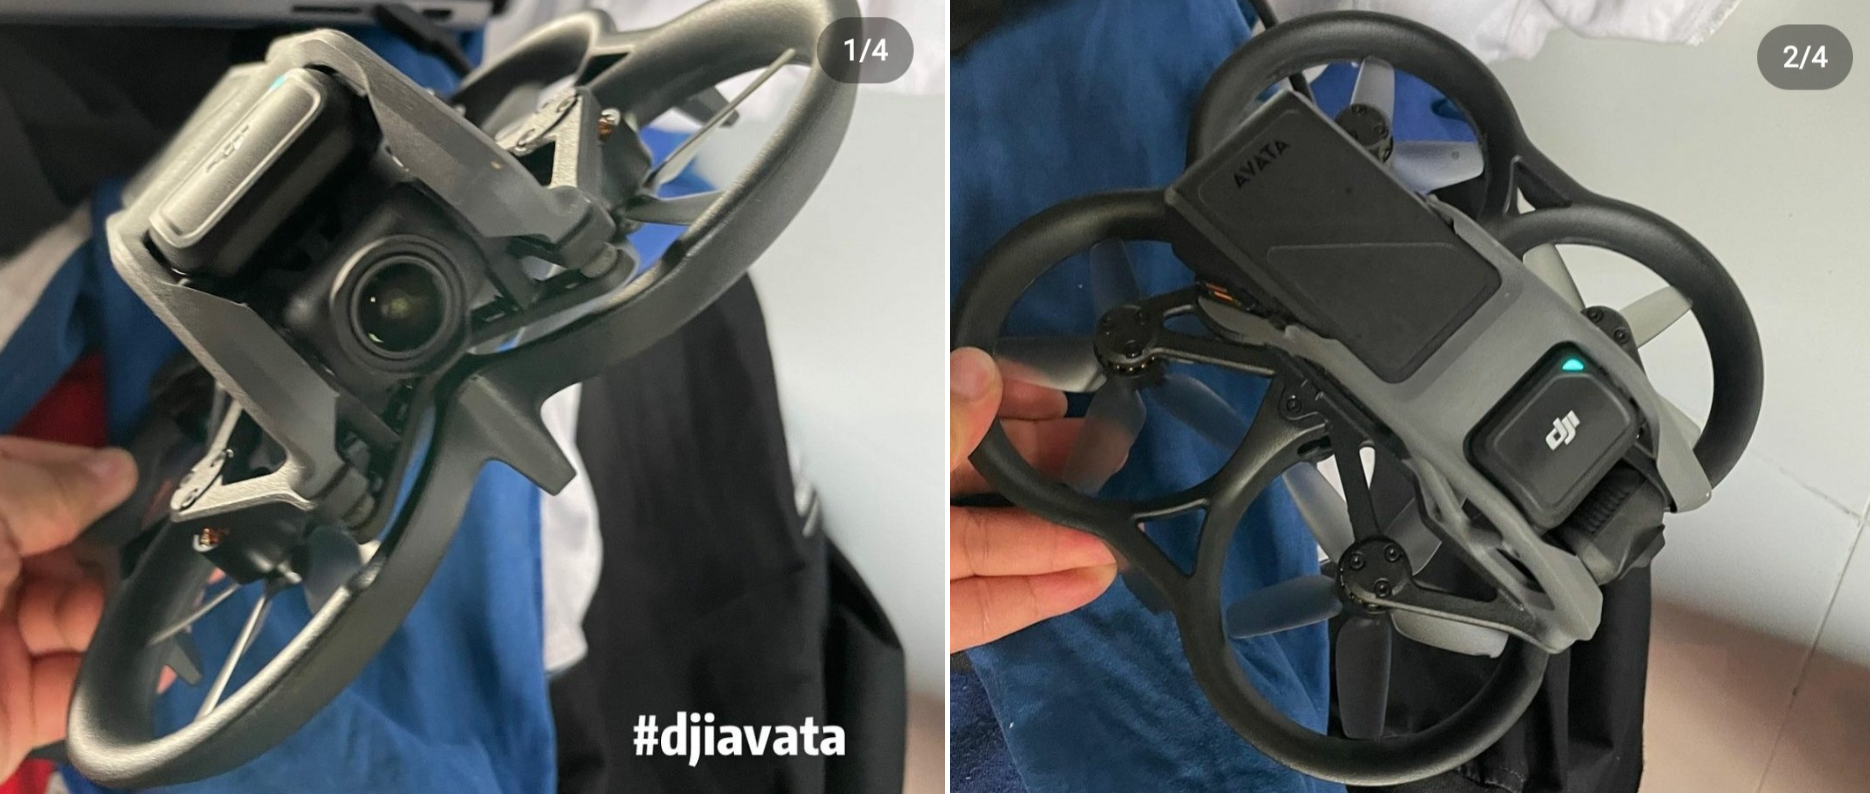 Опубліковані фотографії та відео неанонсованого FPV-дрону DJI Avata